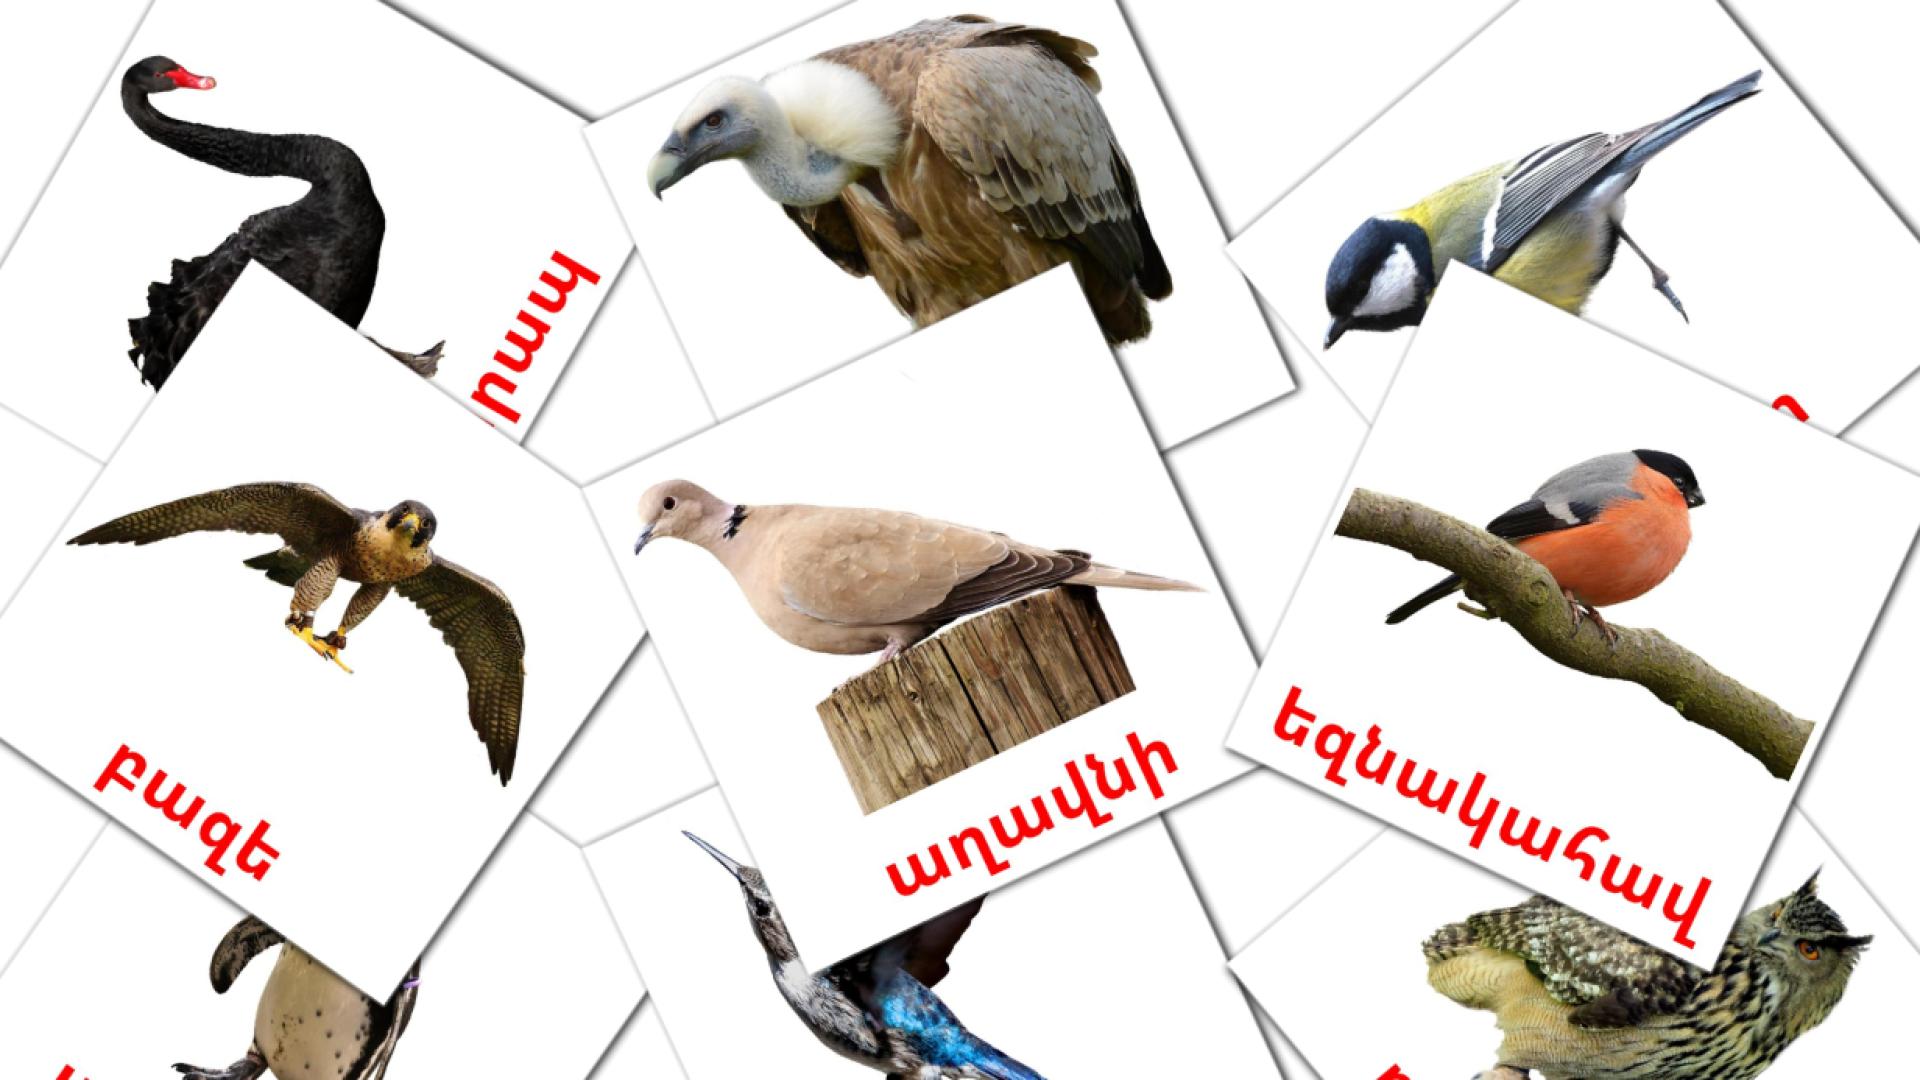 Wilde vogels - armeensee woordenschatkaarten